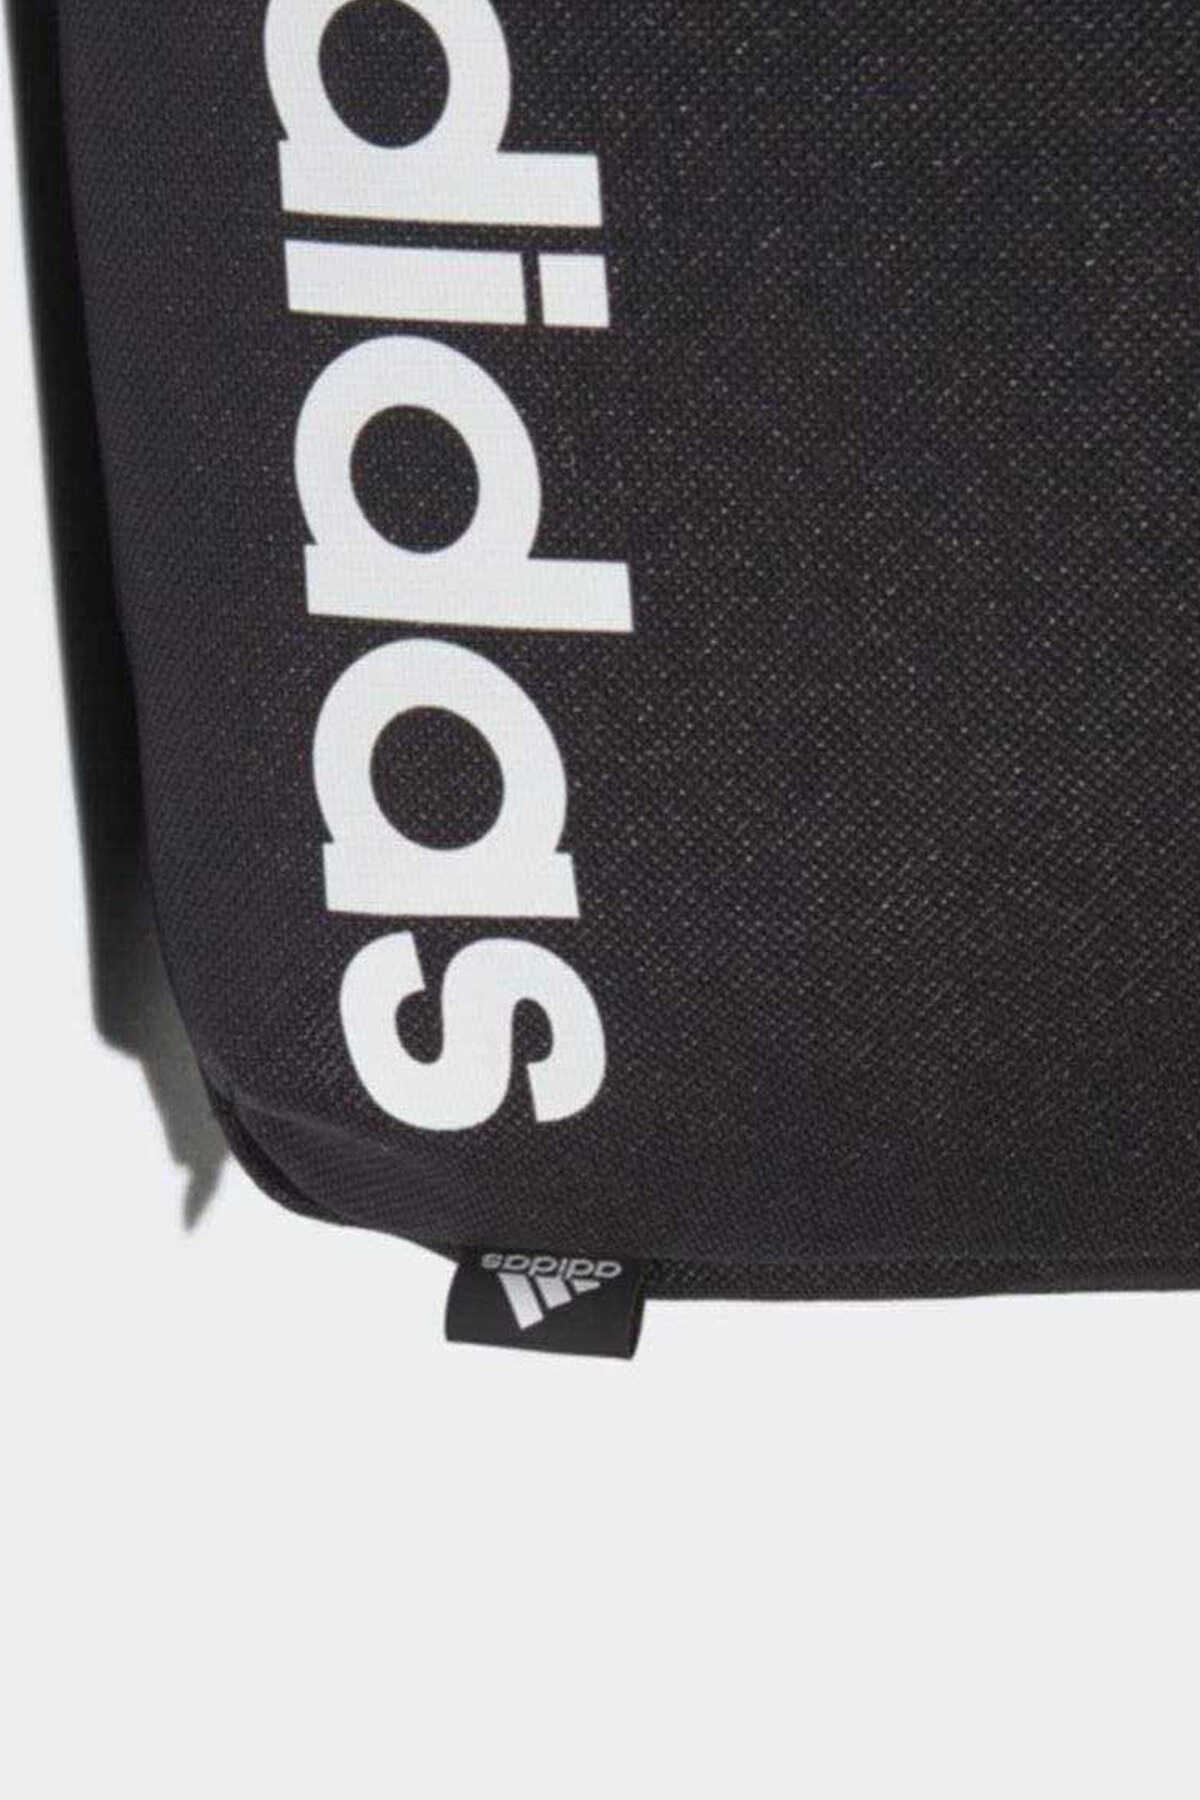 کیف دوشی چاپ دار مردانه مشکی برند adidas 